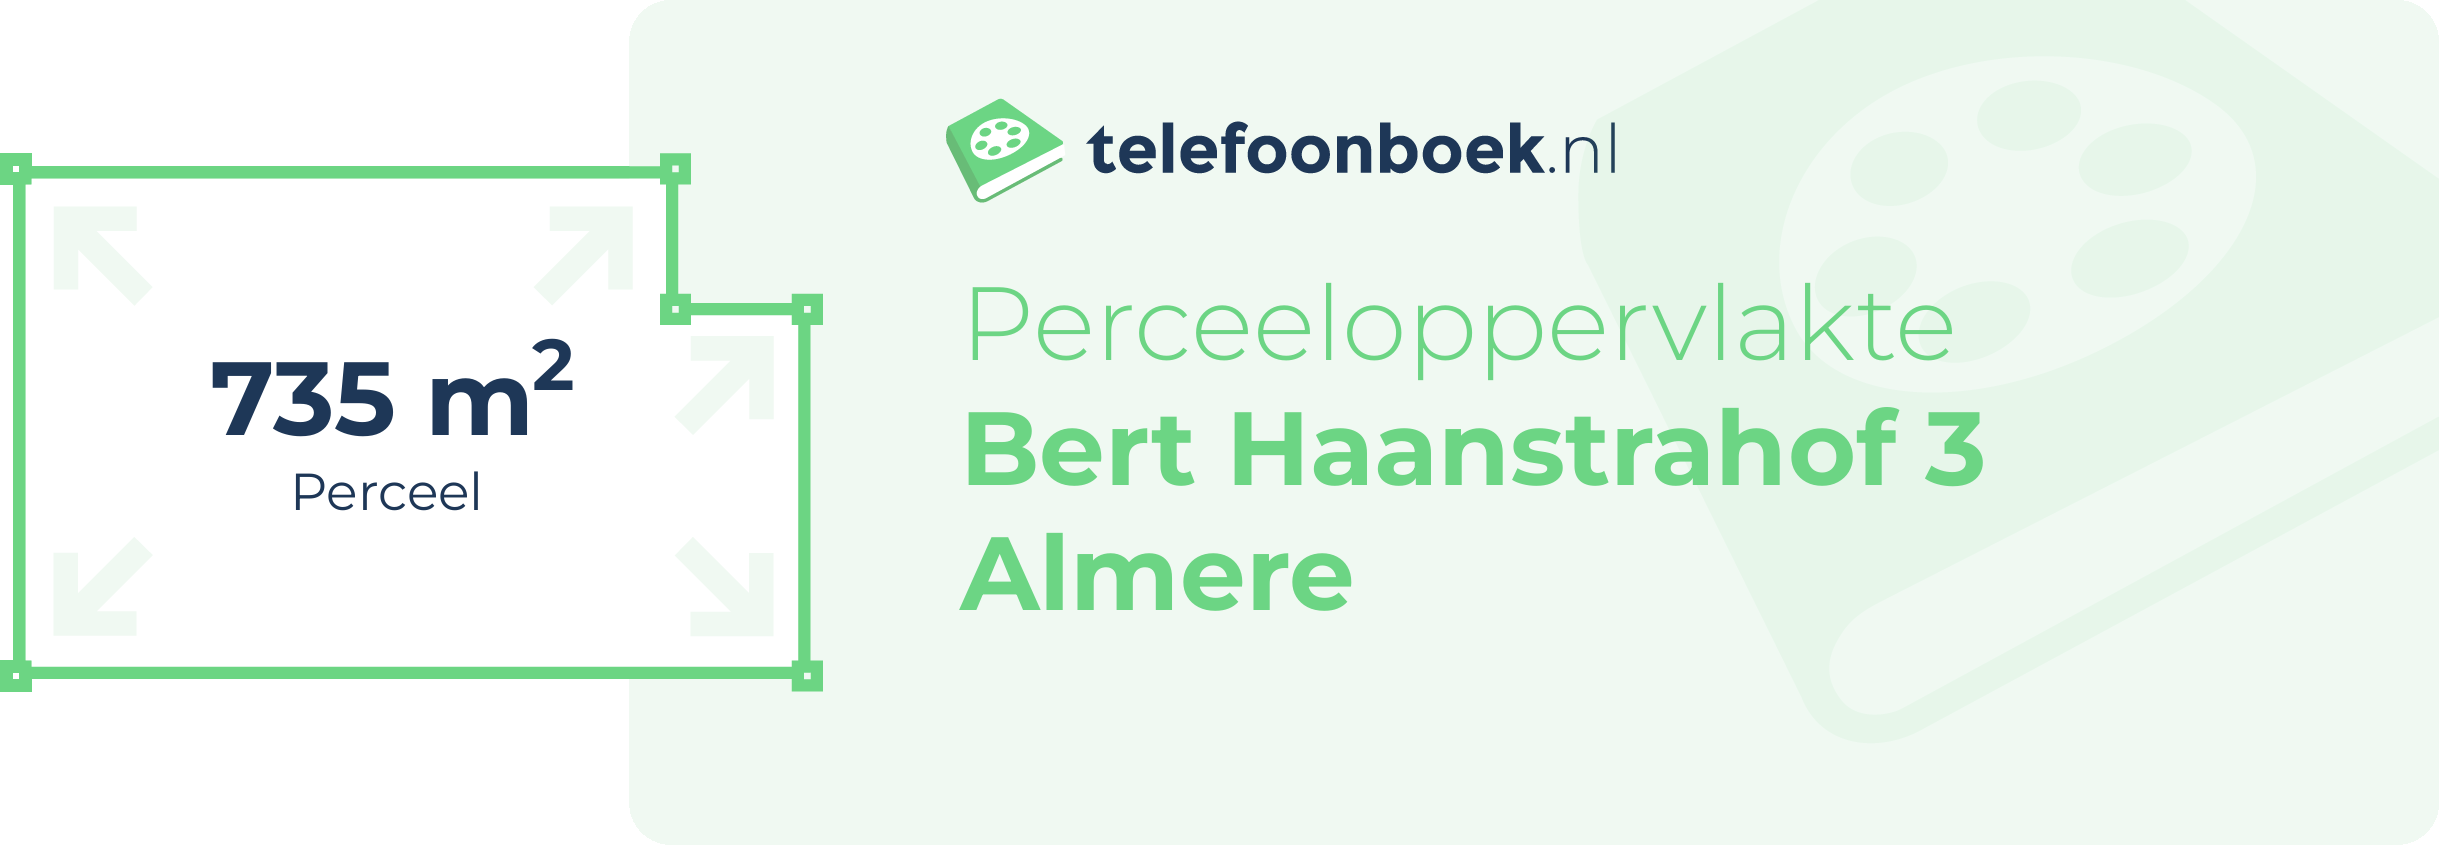 Perceeloppervlakte Bert Haanstrahof 3 Almere